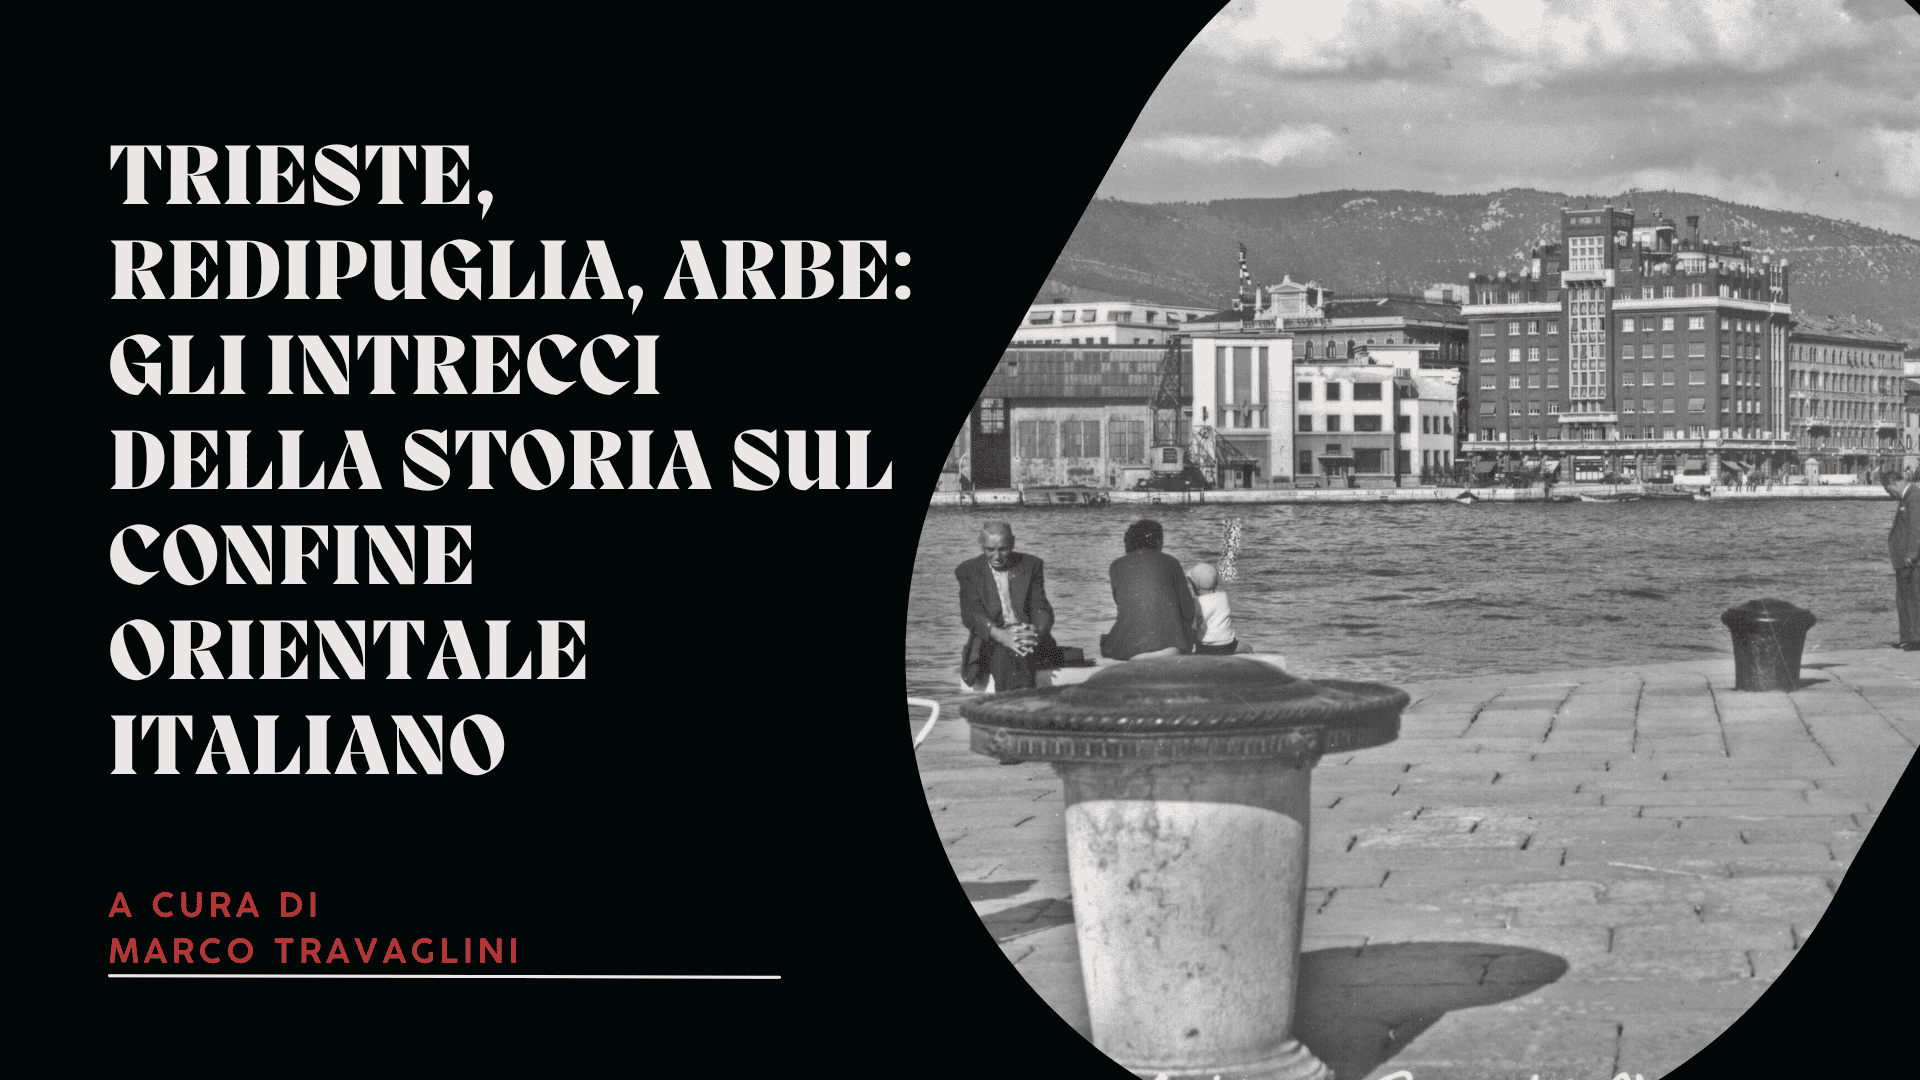 Trieste, Redipuglia, Arbe: gli intrecci della storia sul confine orientale italiano